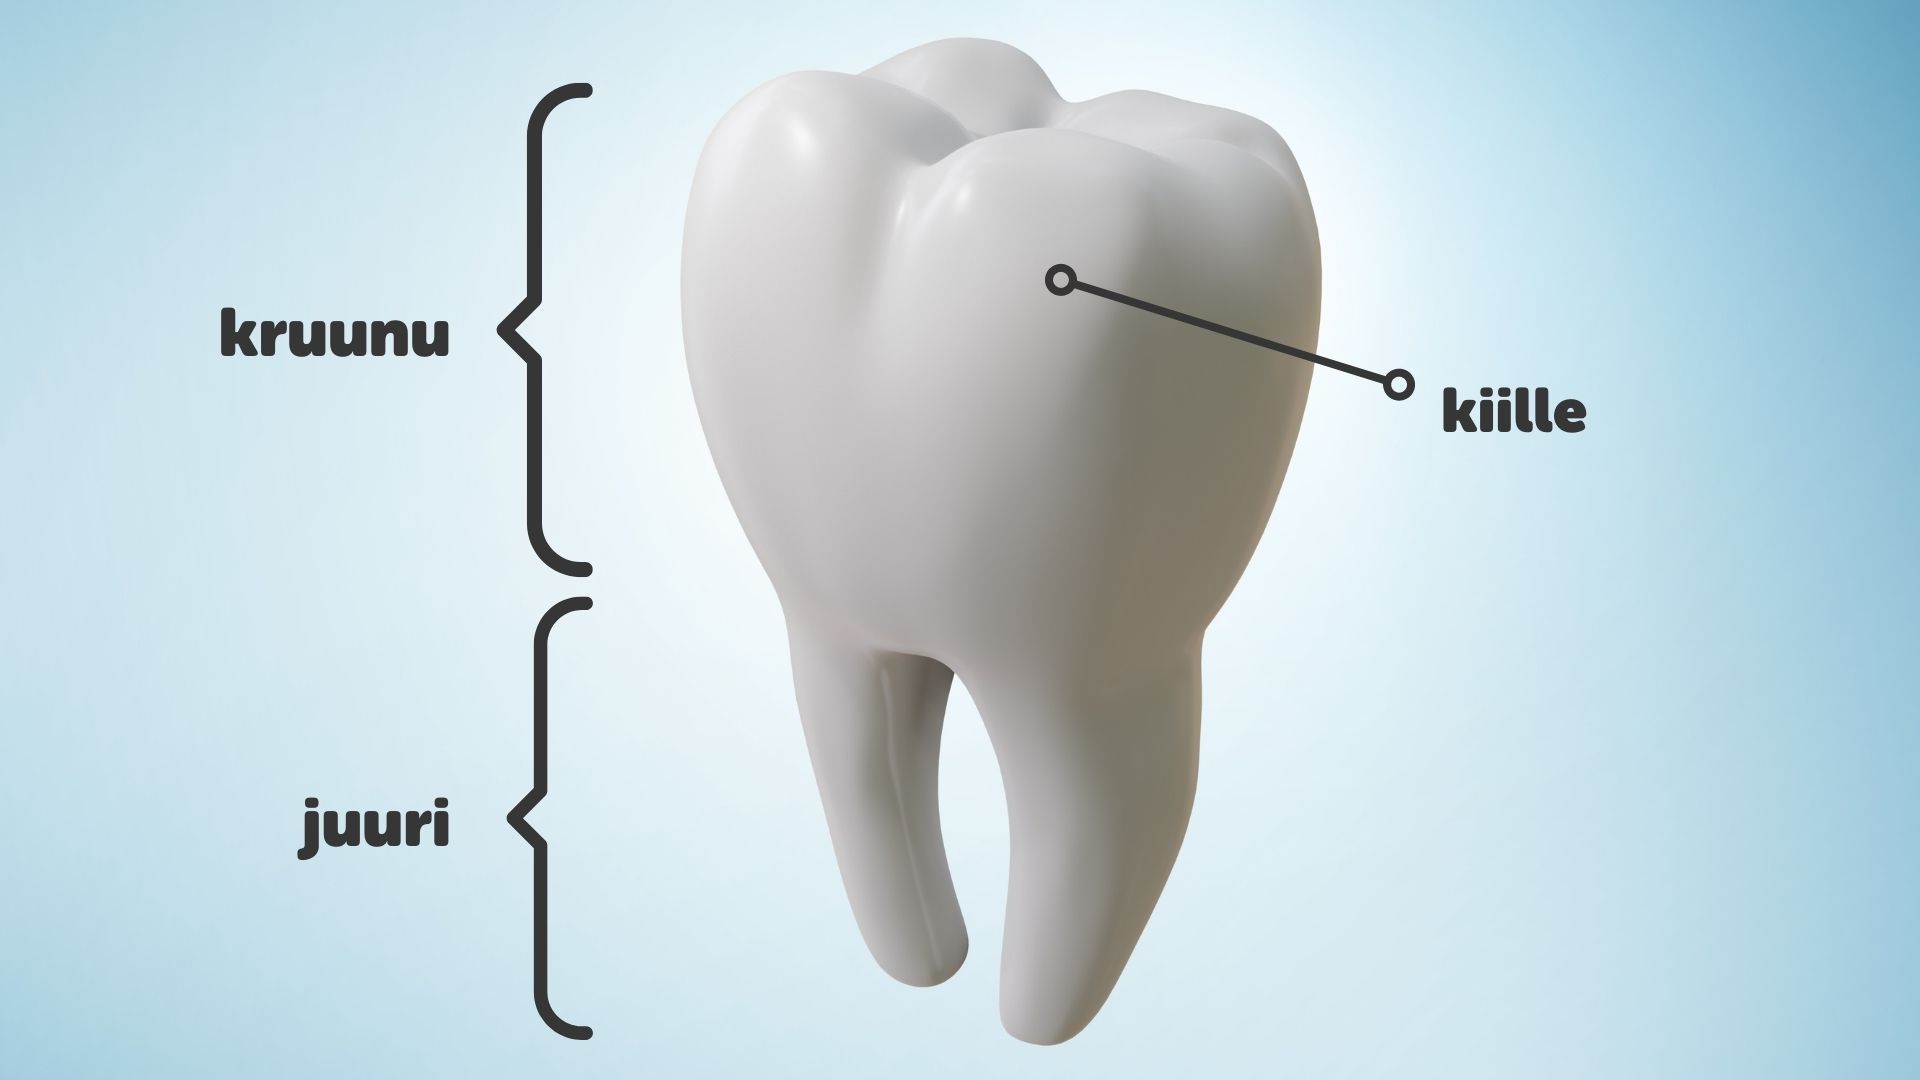 Piirroskuva hampaasta, jossa on tekstillä havainnollistettu hampaan osat, kruunu, juuri sekä kiille.